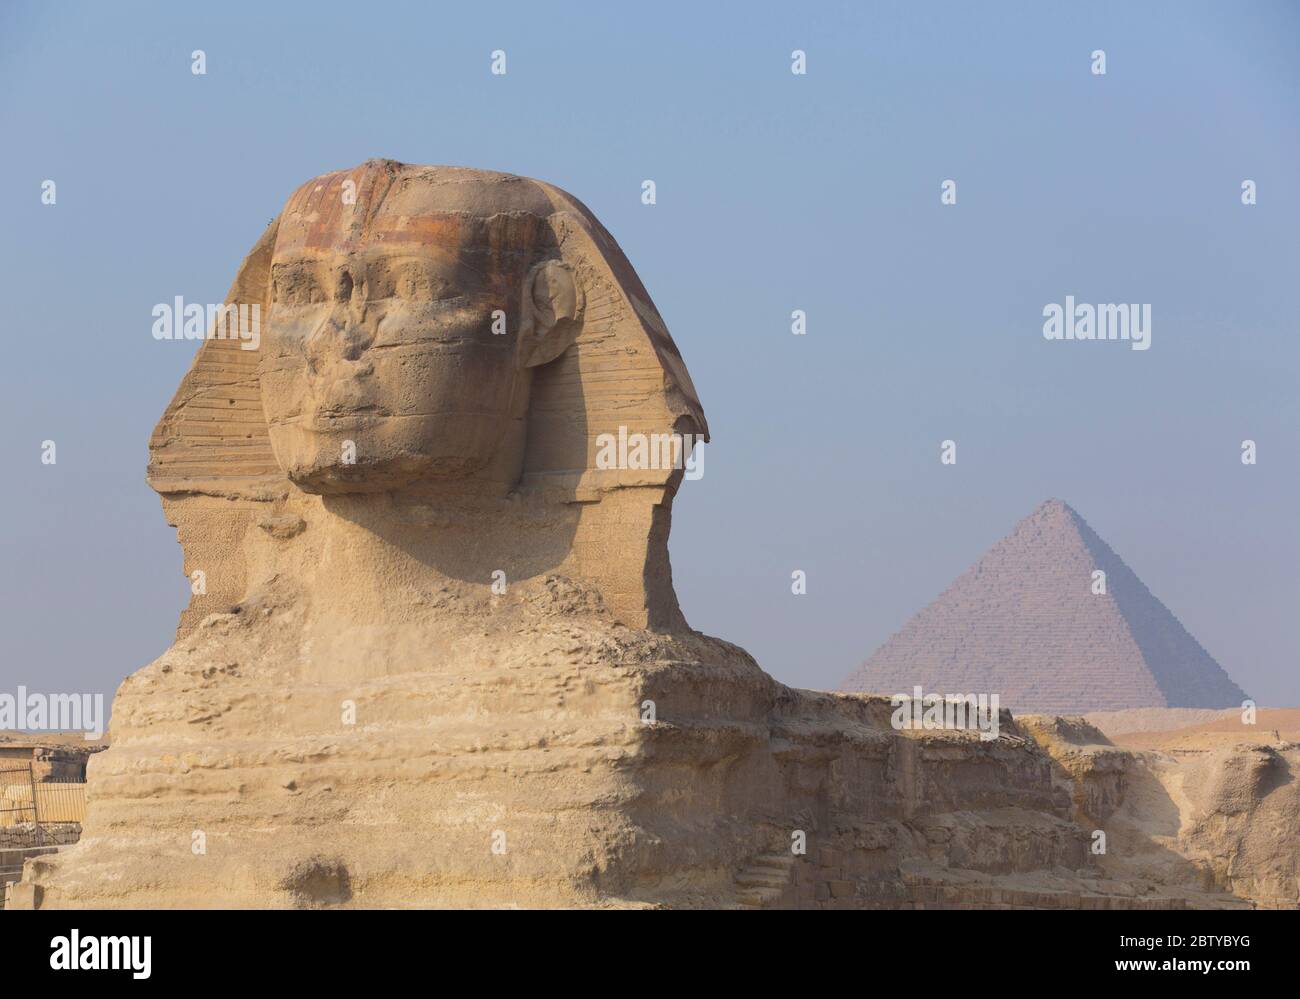 Le Grand Sphinx de Gizeh, Pyramide de Mycerinus en arrière-plan, les grandes Pyramides de Gizeh, site du patrimoine mondial de l'UNESCO, Gizeh, Egypte, Afrique du Nord, Africain Banque D'Images